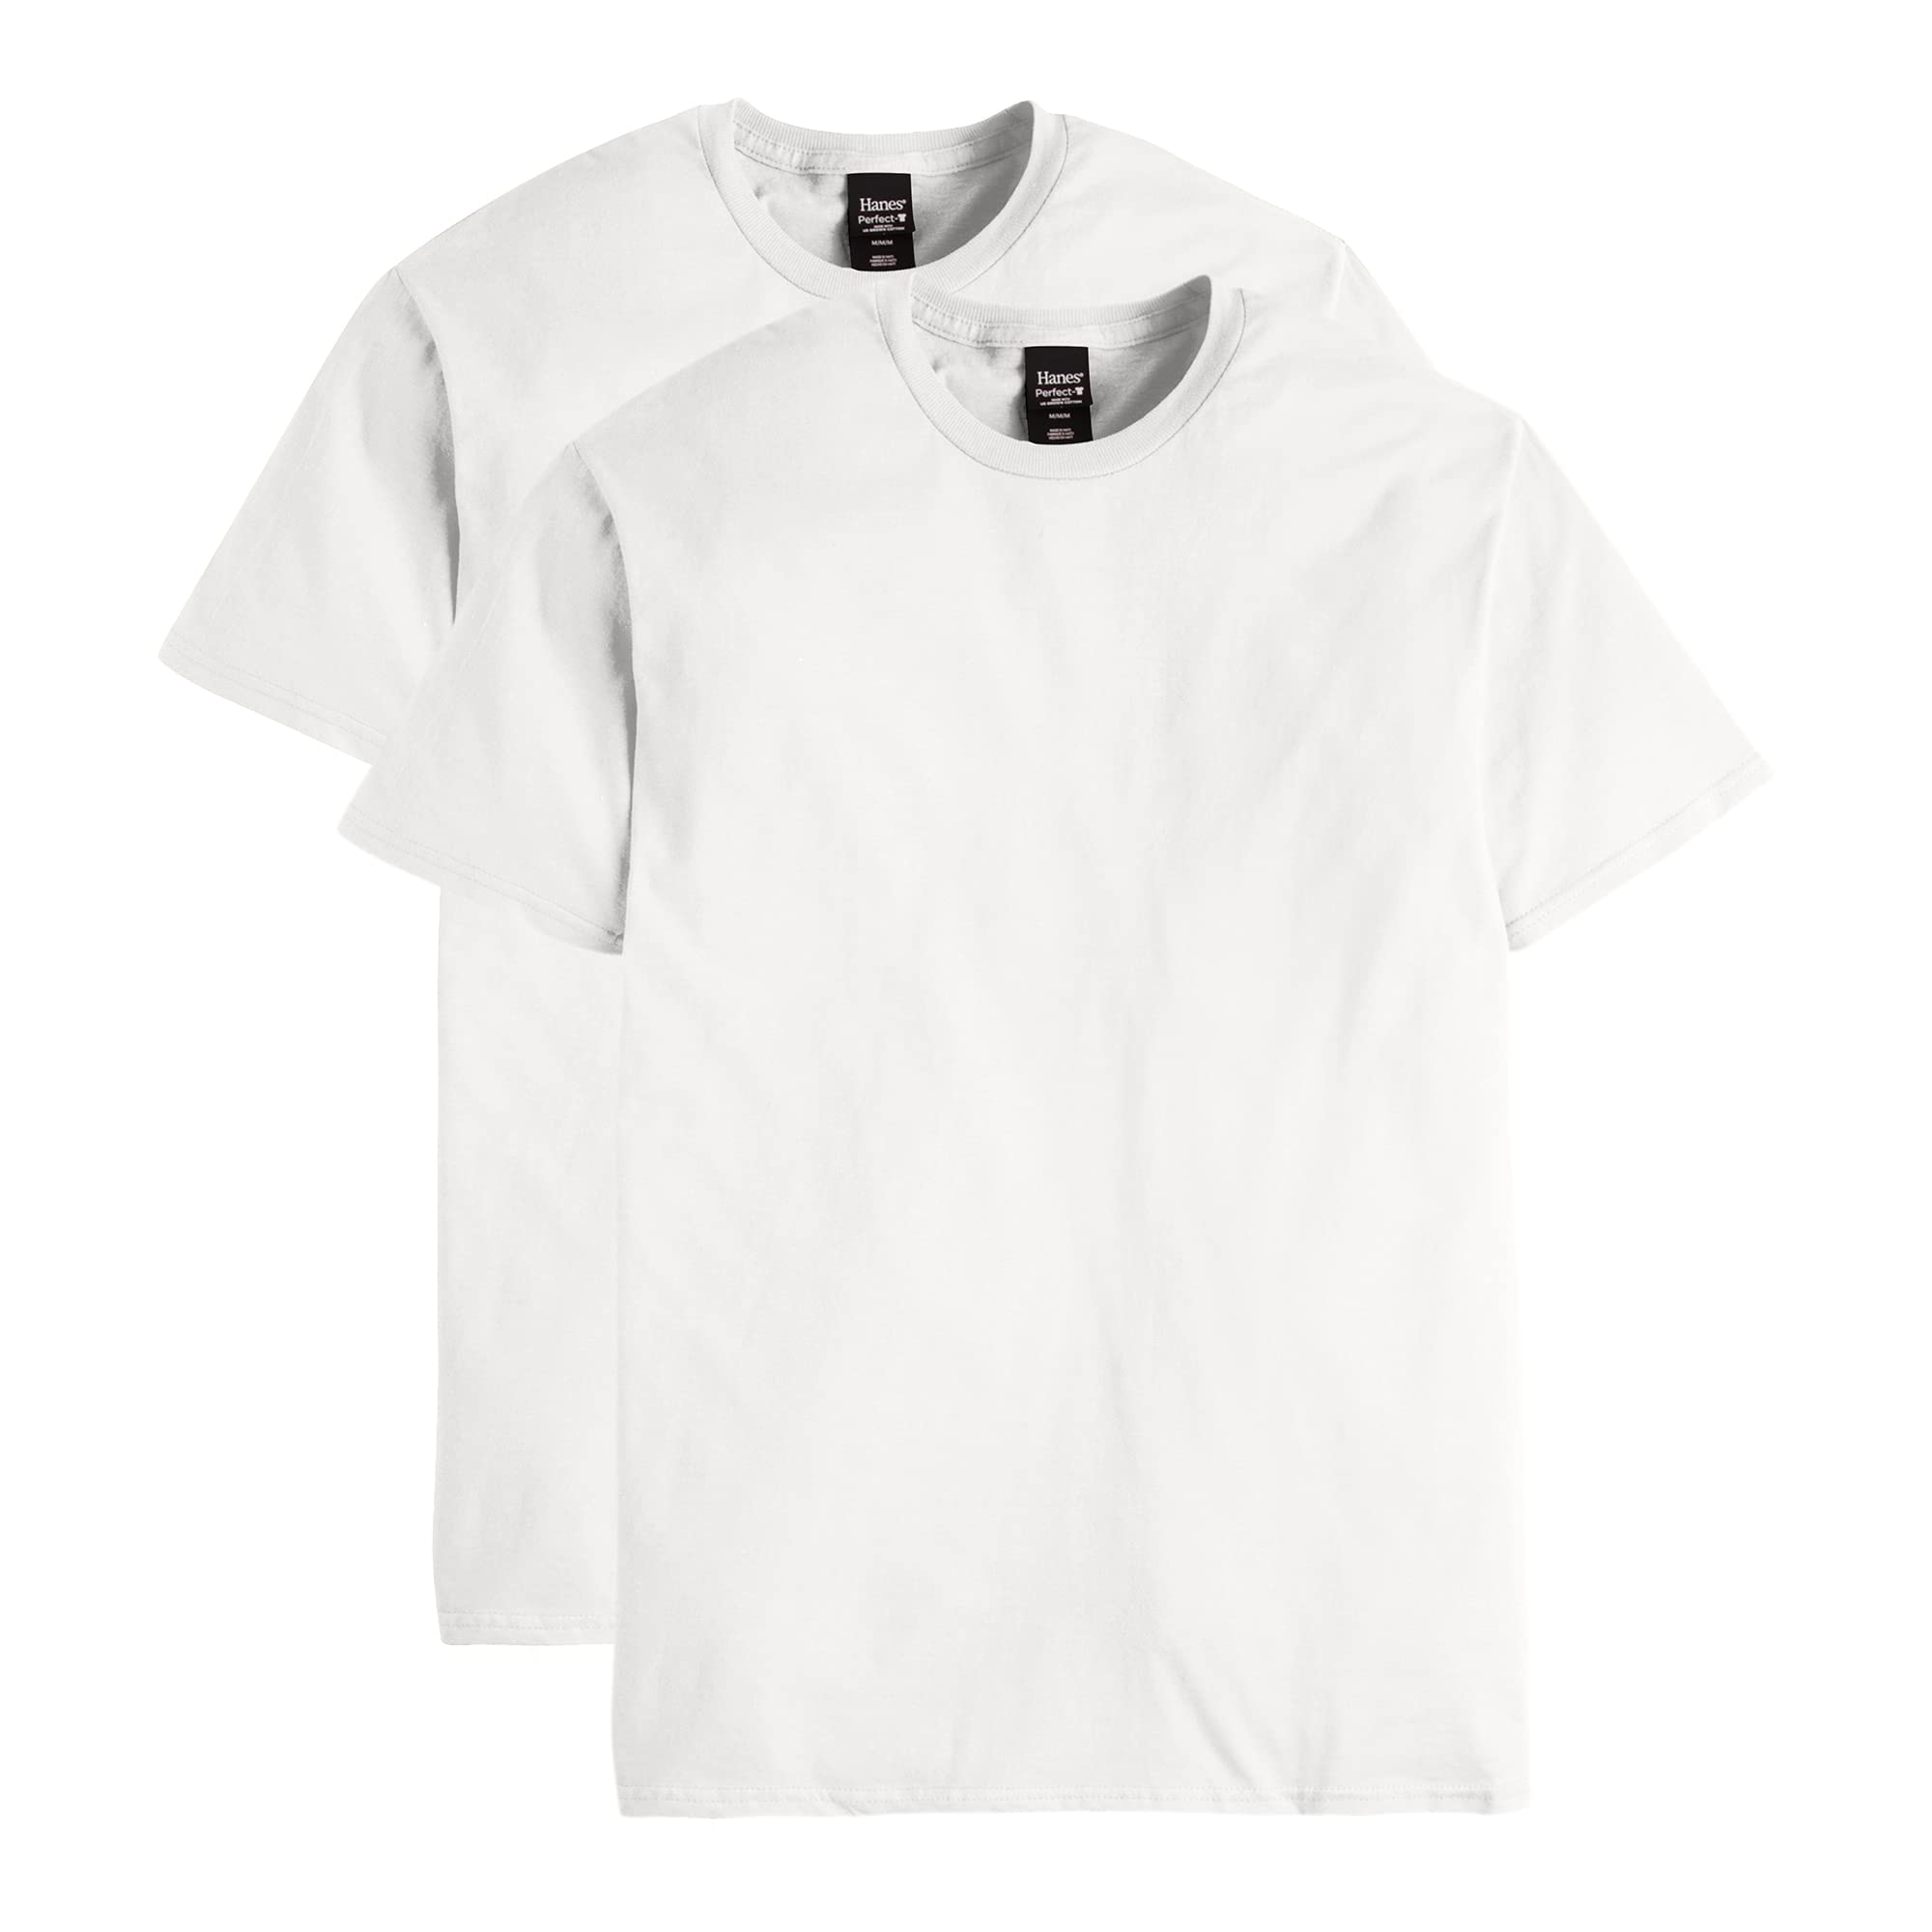 2-Pack Hanes Men's Nano Premium Cotton T-Shirt (White) $7.50 + Free ...